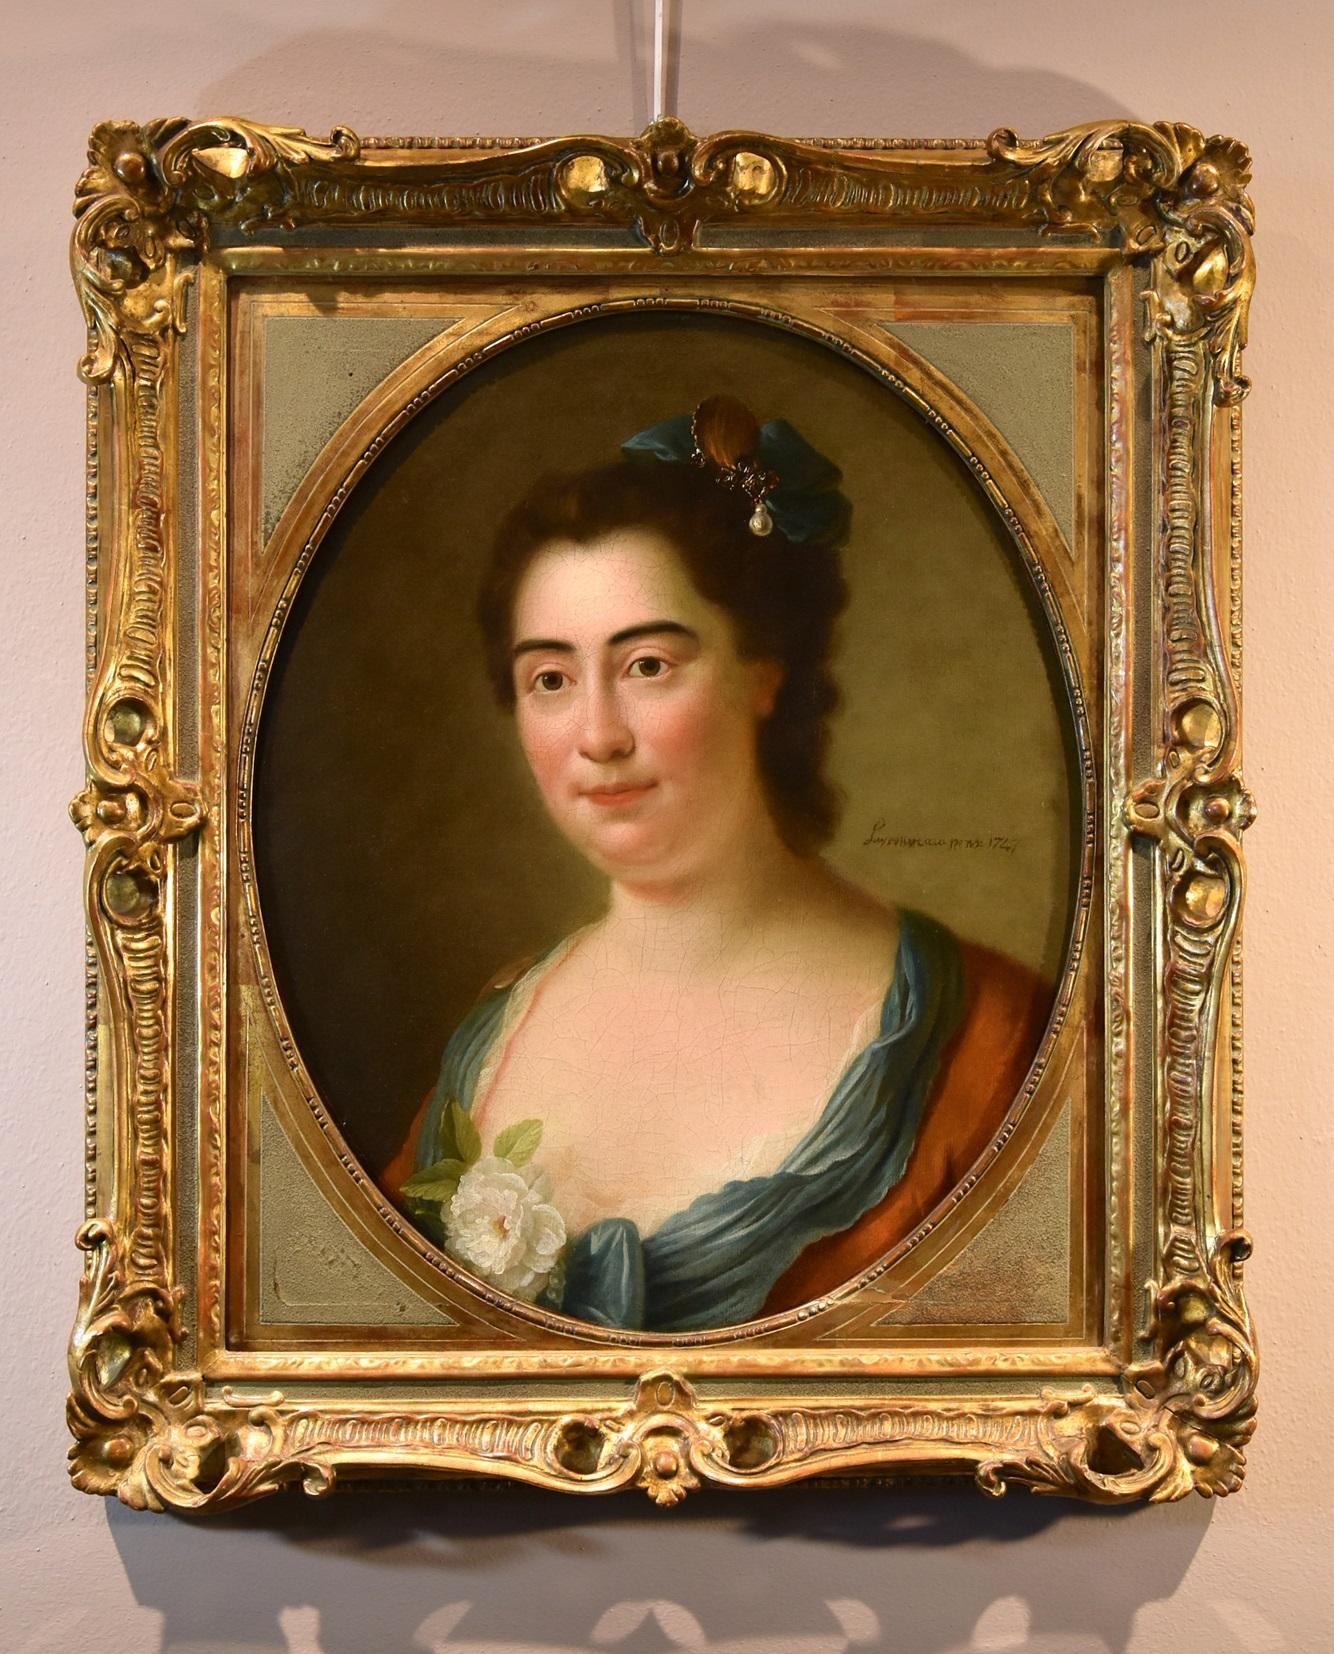 Perroneau, Porträt einer Dame und einer Frau, Gemälde, Öl auf Leinwand, 18. Jahrhundert, Alter Meister, Französisch